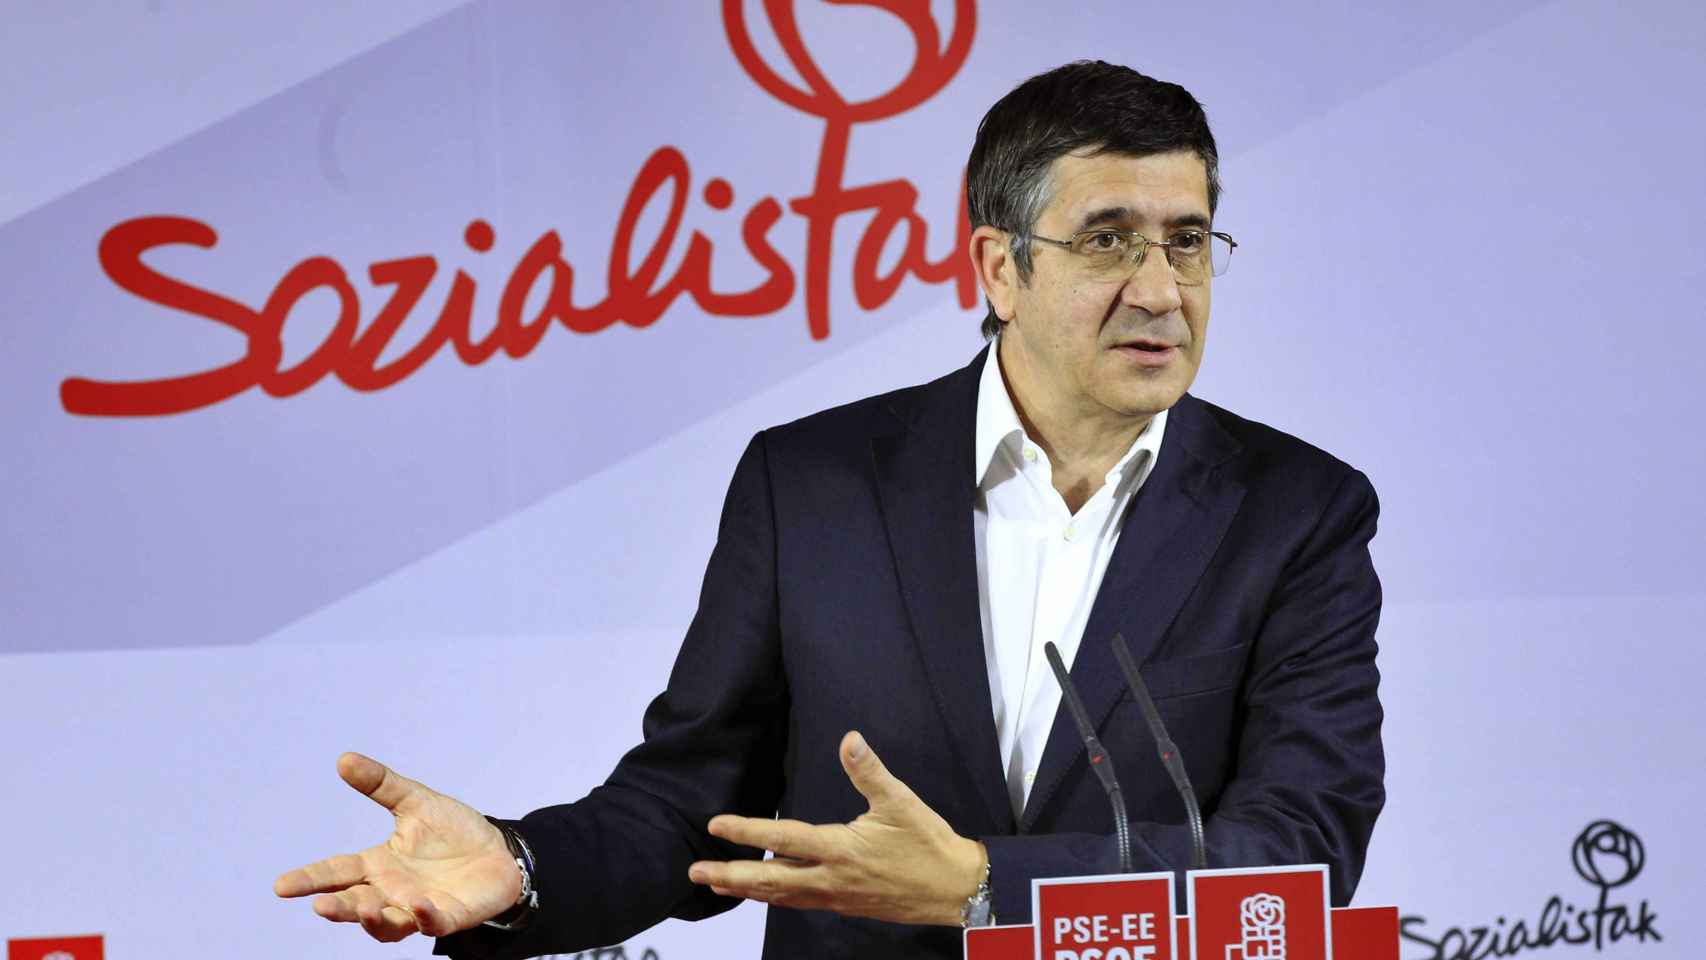 El dirigente del PSOE Patxi López